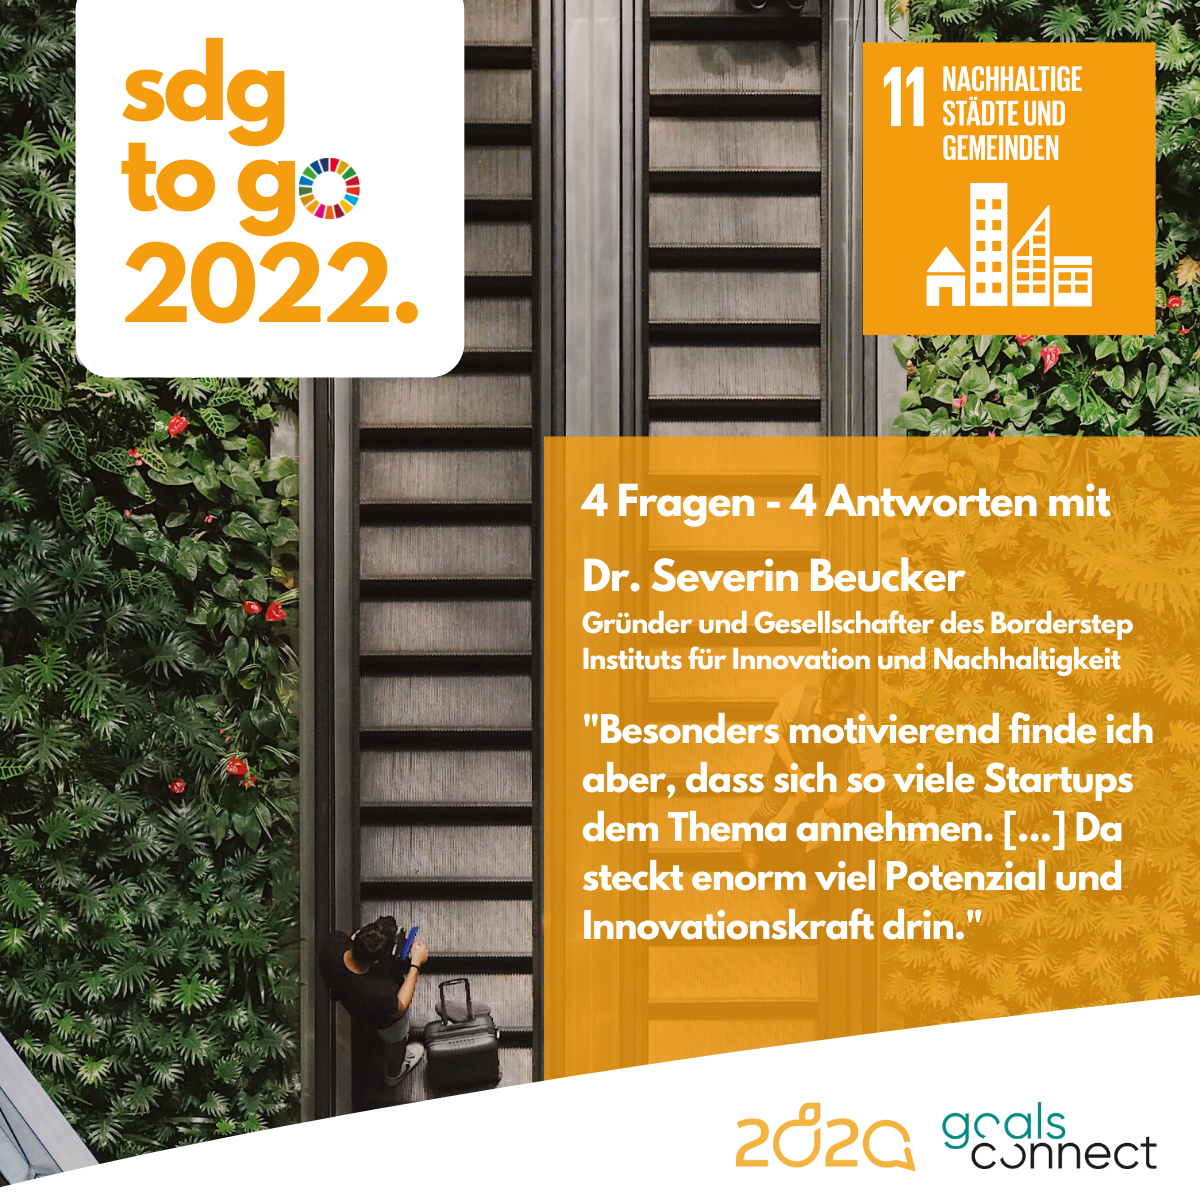 You are currently viewing SDG to go – Heute: SDG 11 „Nachhaltige Städte und Gemeinden“